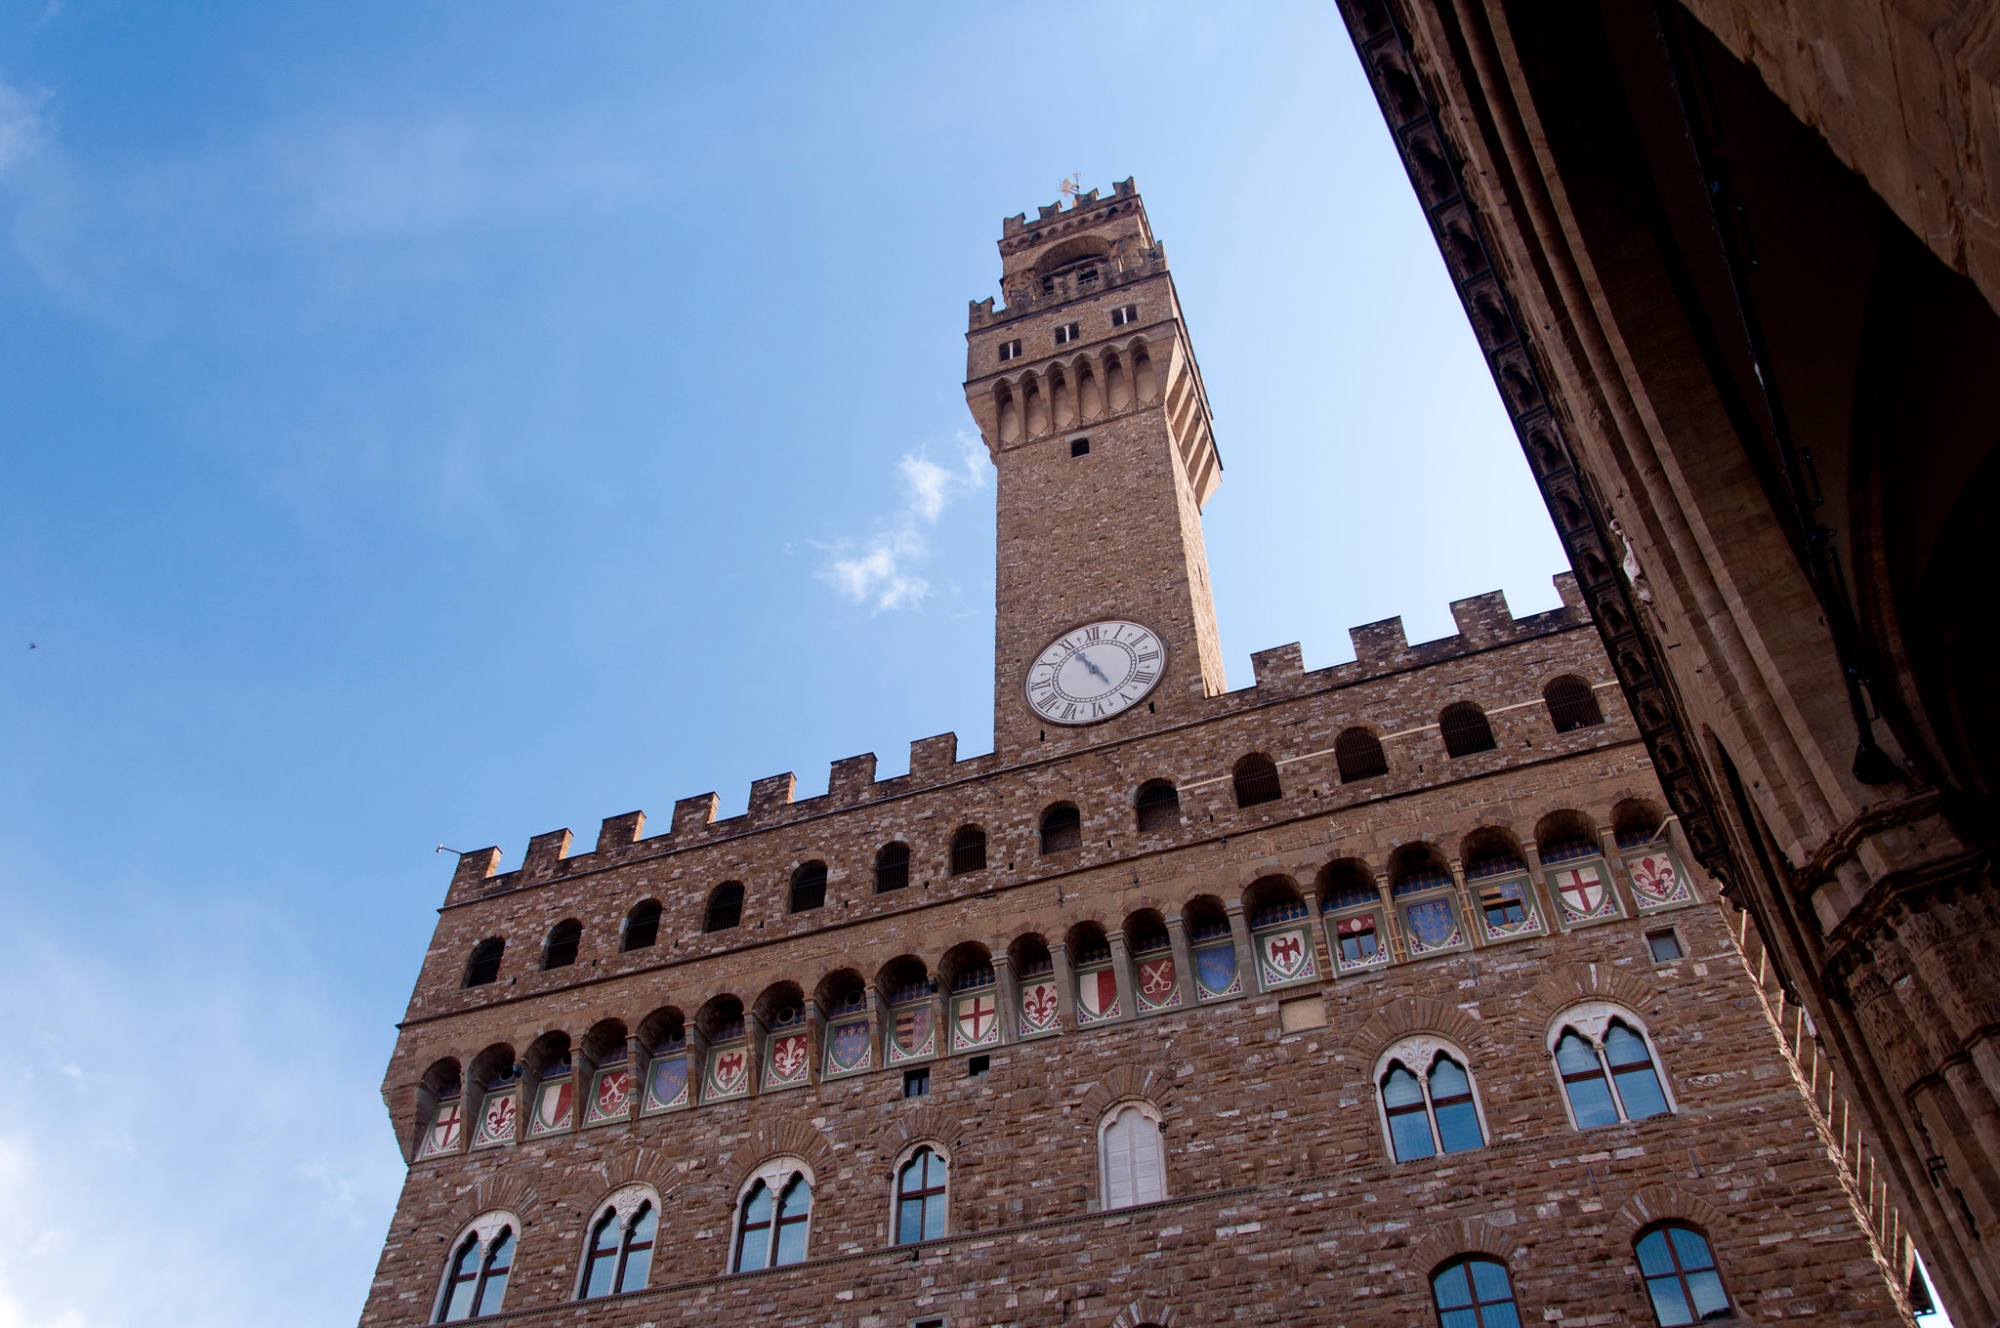 Palazzo Vecchio in Piazza della Signoria